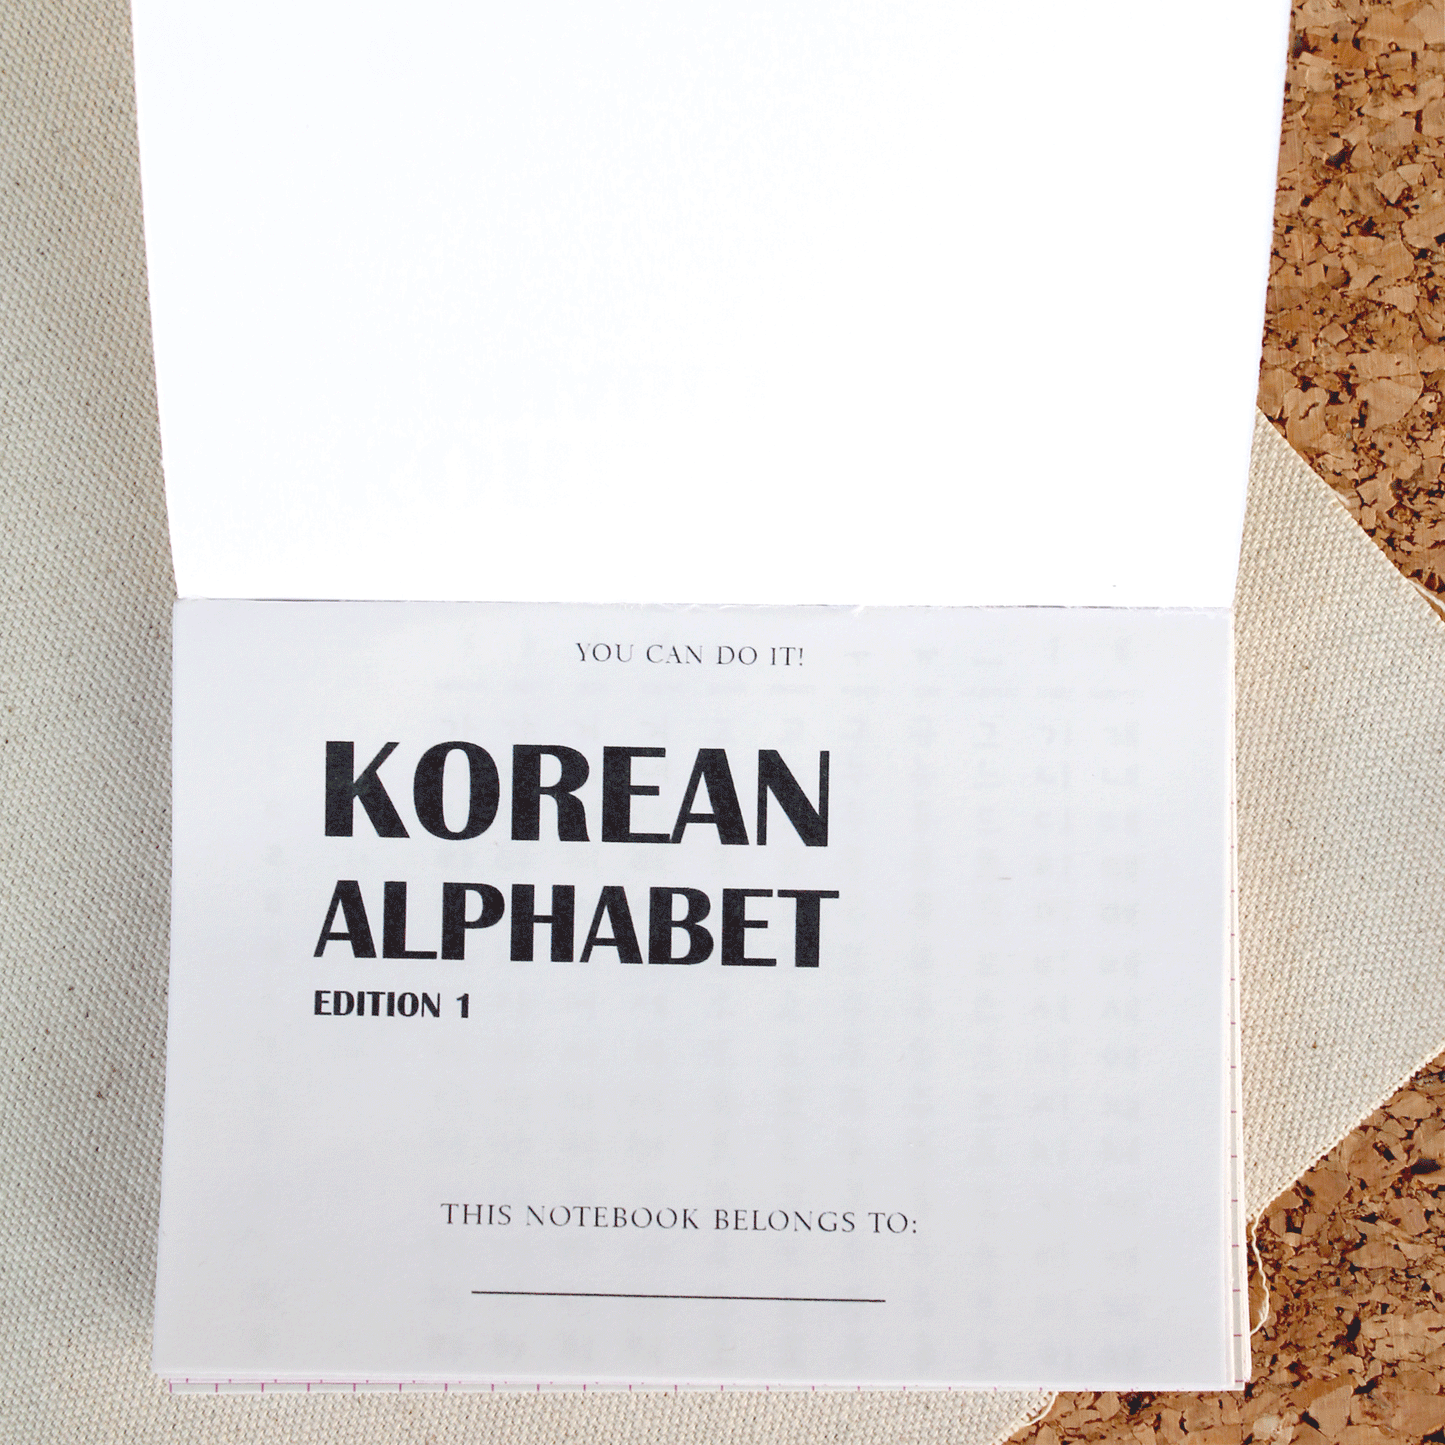 Korean Alphabet Book A5 - Edition 1